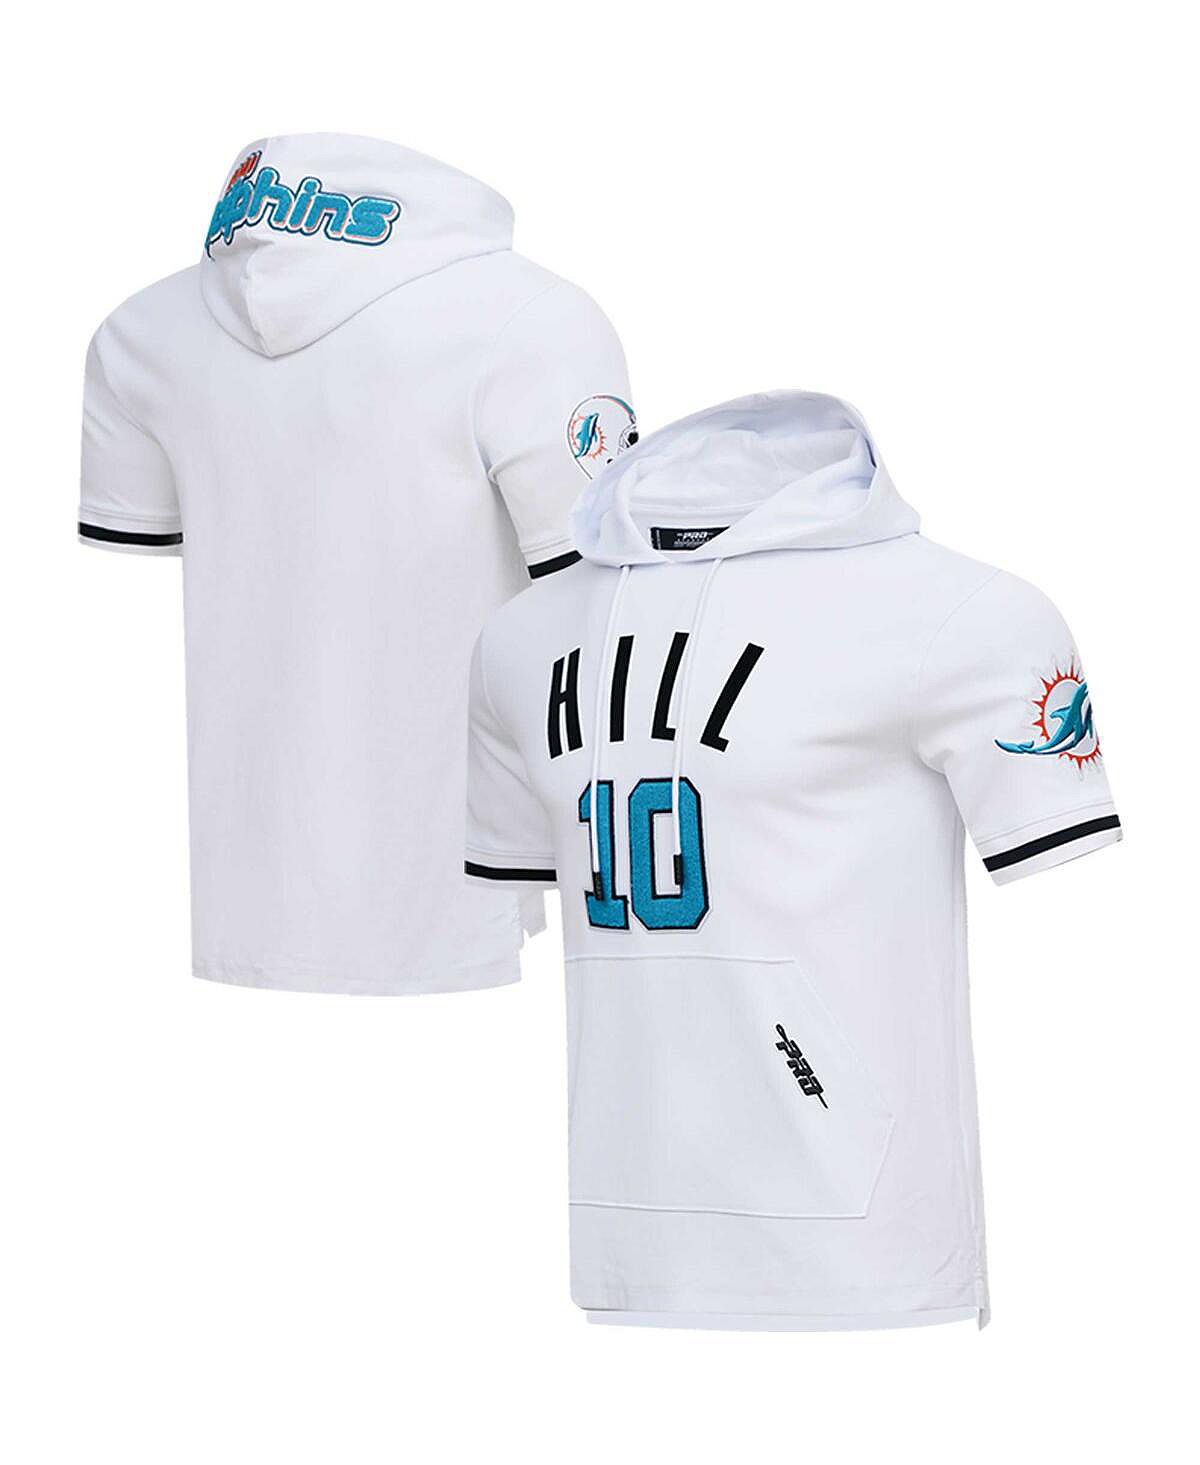 Мужская футболка с капюшоном tyreek hill white miami dolphins с именем и номером игрока Pro Standard, белый